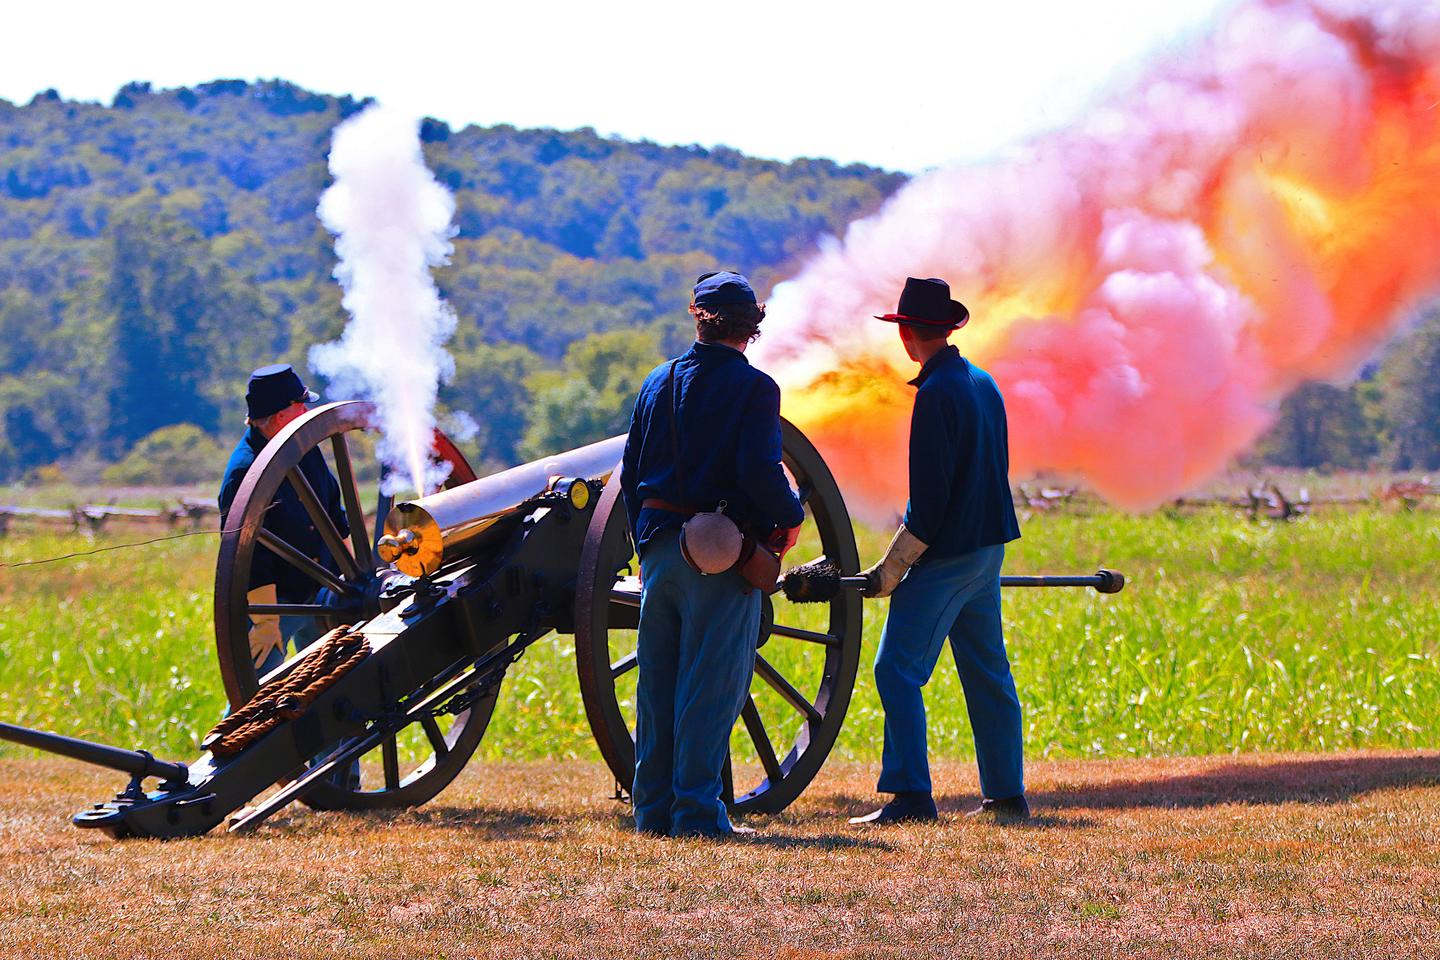 Wilson's Creek artillery crewA Wilson's Creek artillery crew fires a cannon during a summer artillery demonstration.